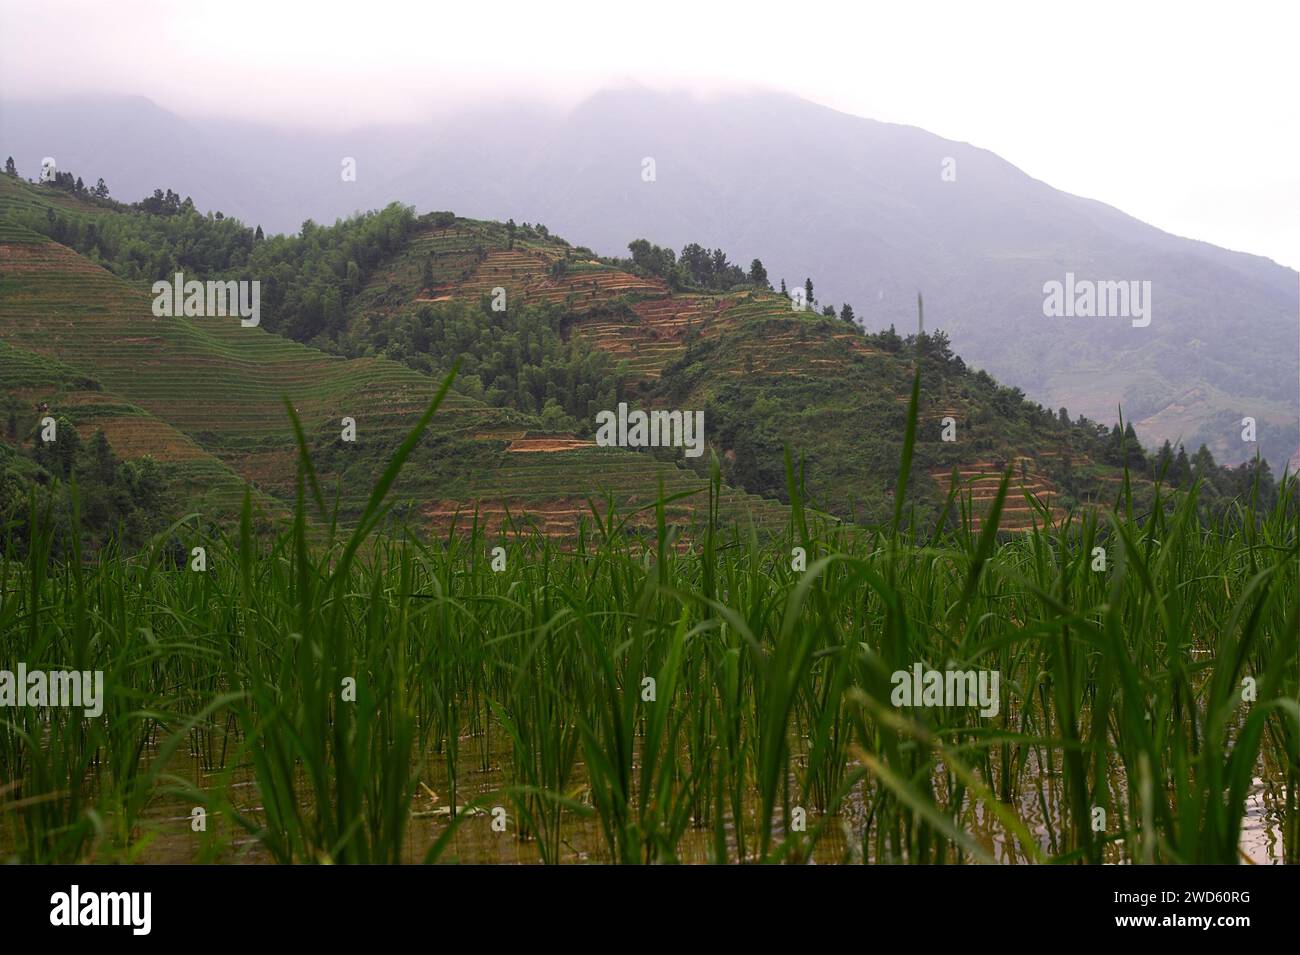 龙胜镇 (龙胜县) 中國 Longsheng Rice Terraces, Dazhai Longji Ping'an Zhuang, China; Oryza sativa L.; rice seedlings on the background of mountains Stock Photo